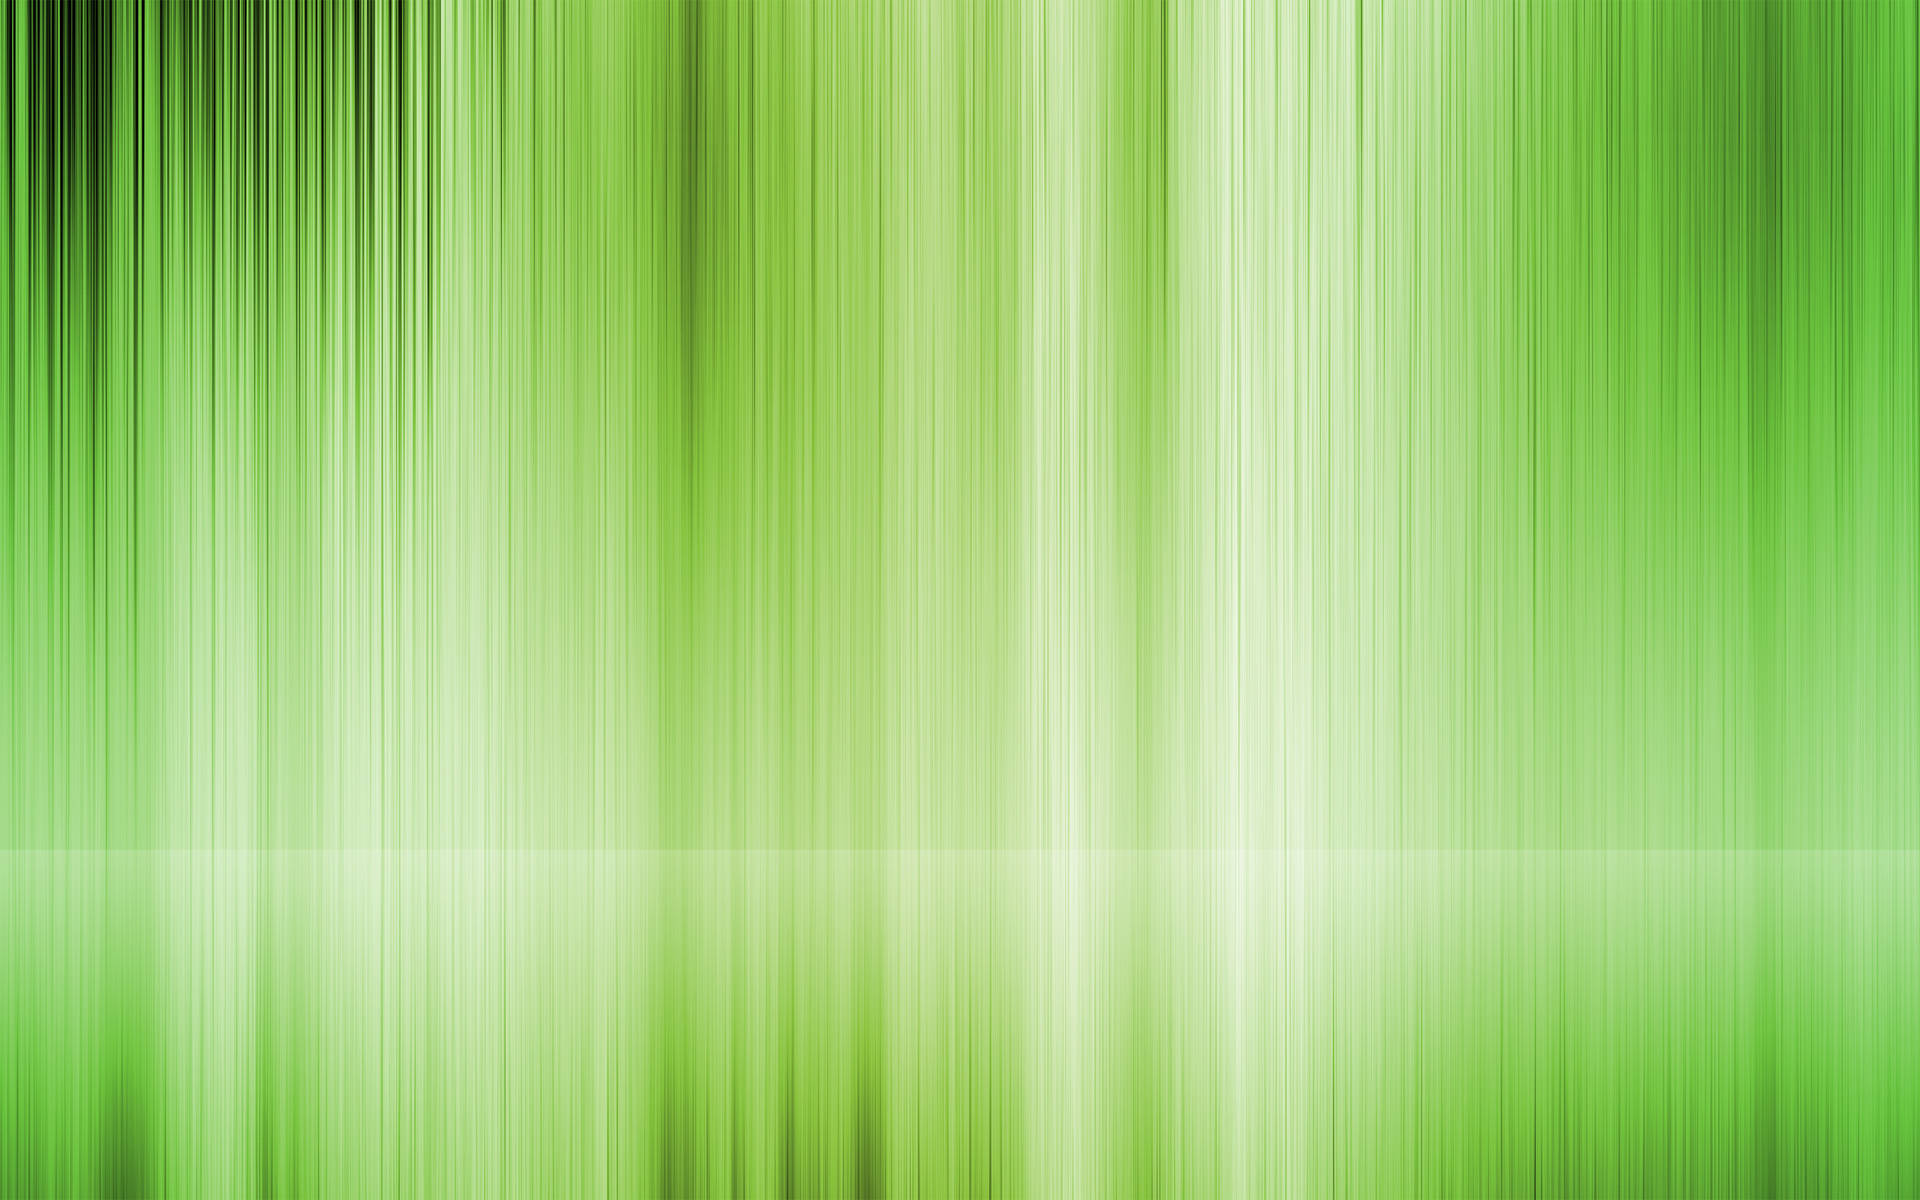 Caption: Striking Plain Green Flare Image Background